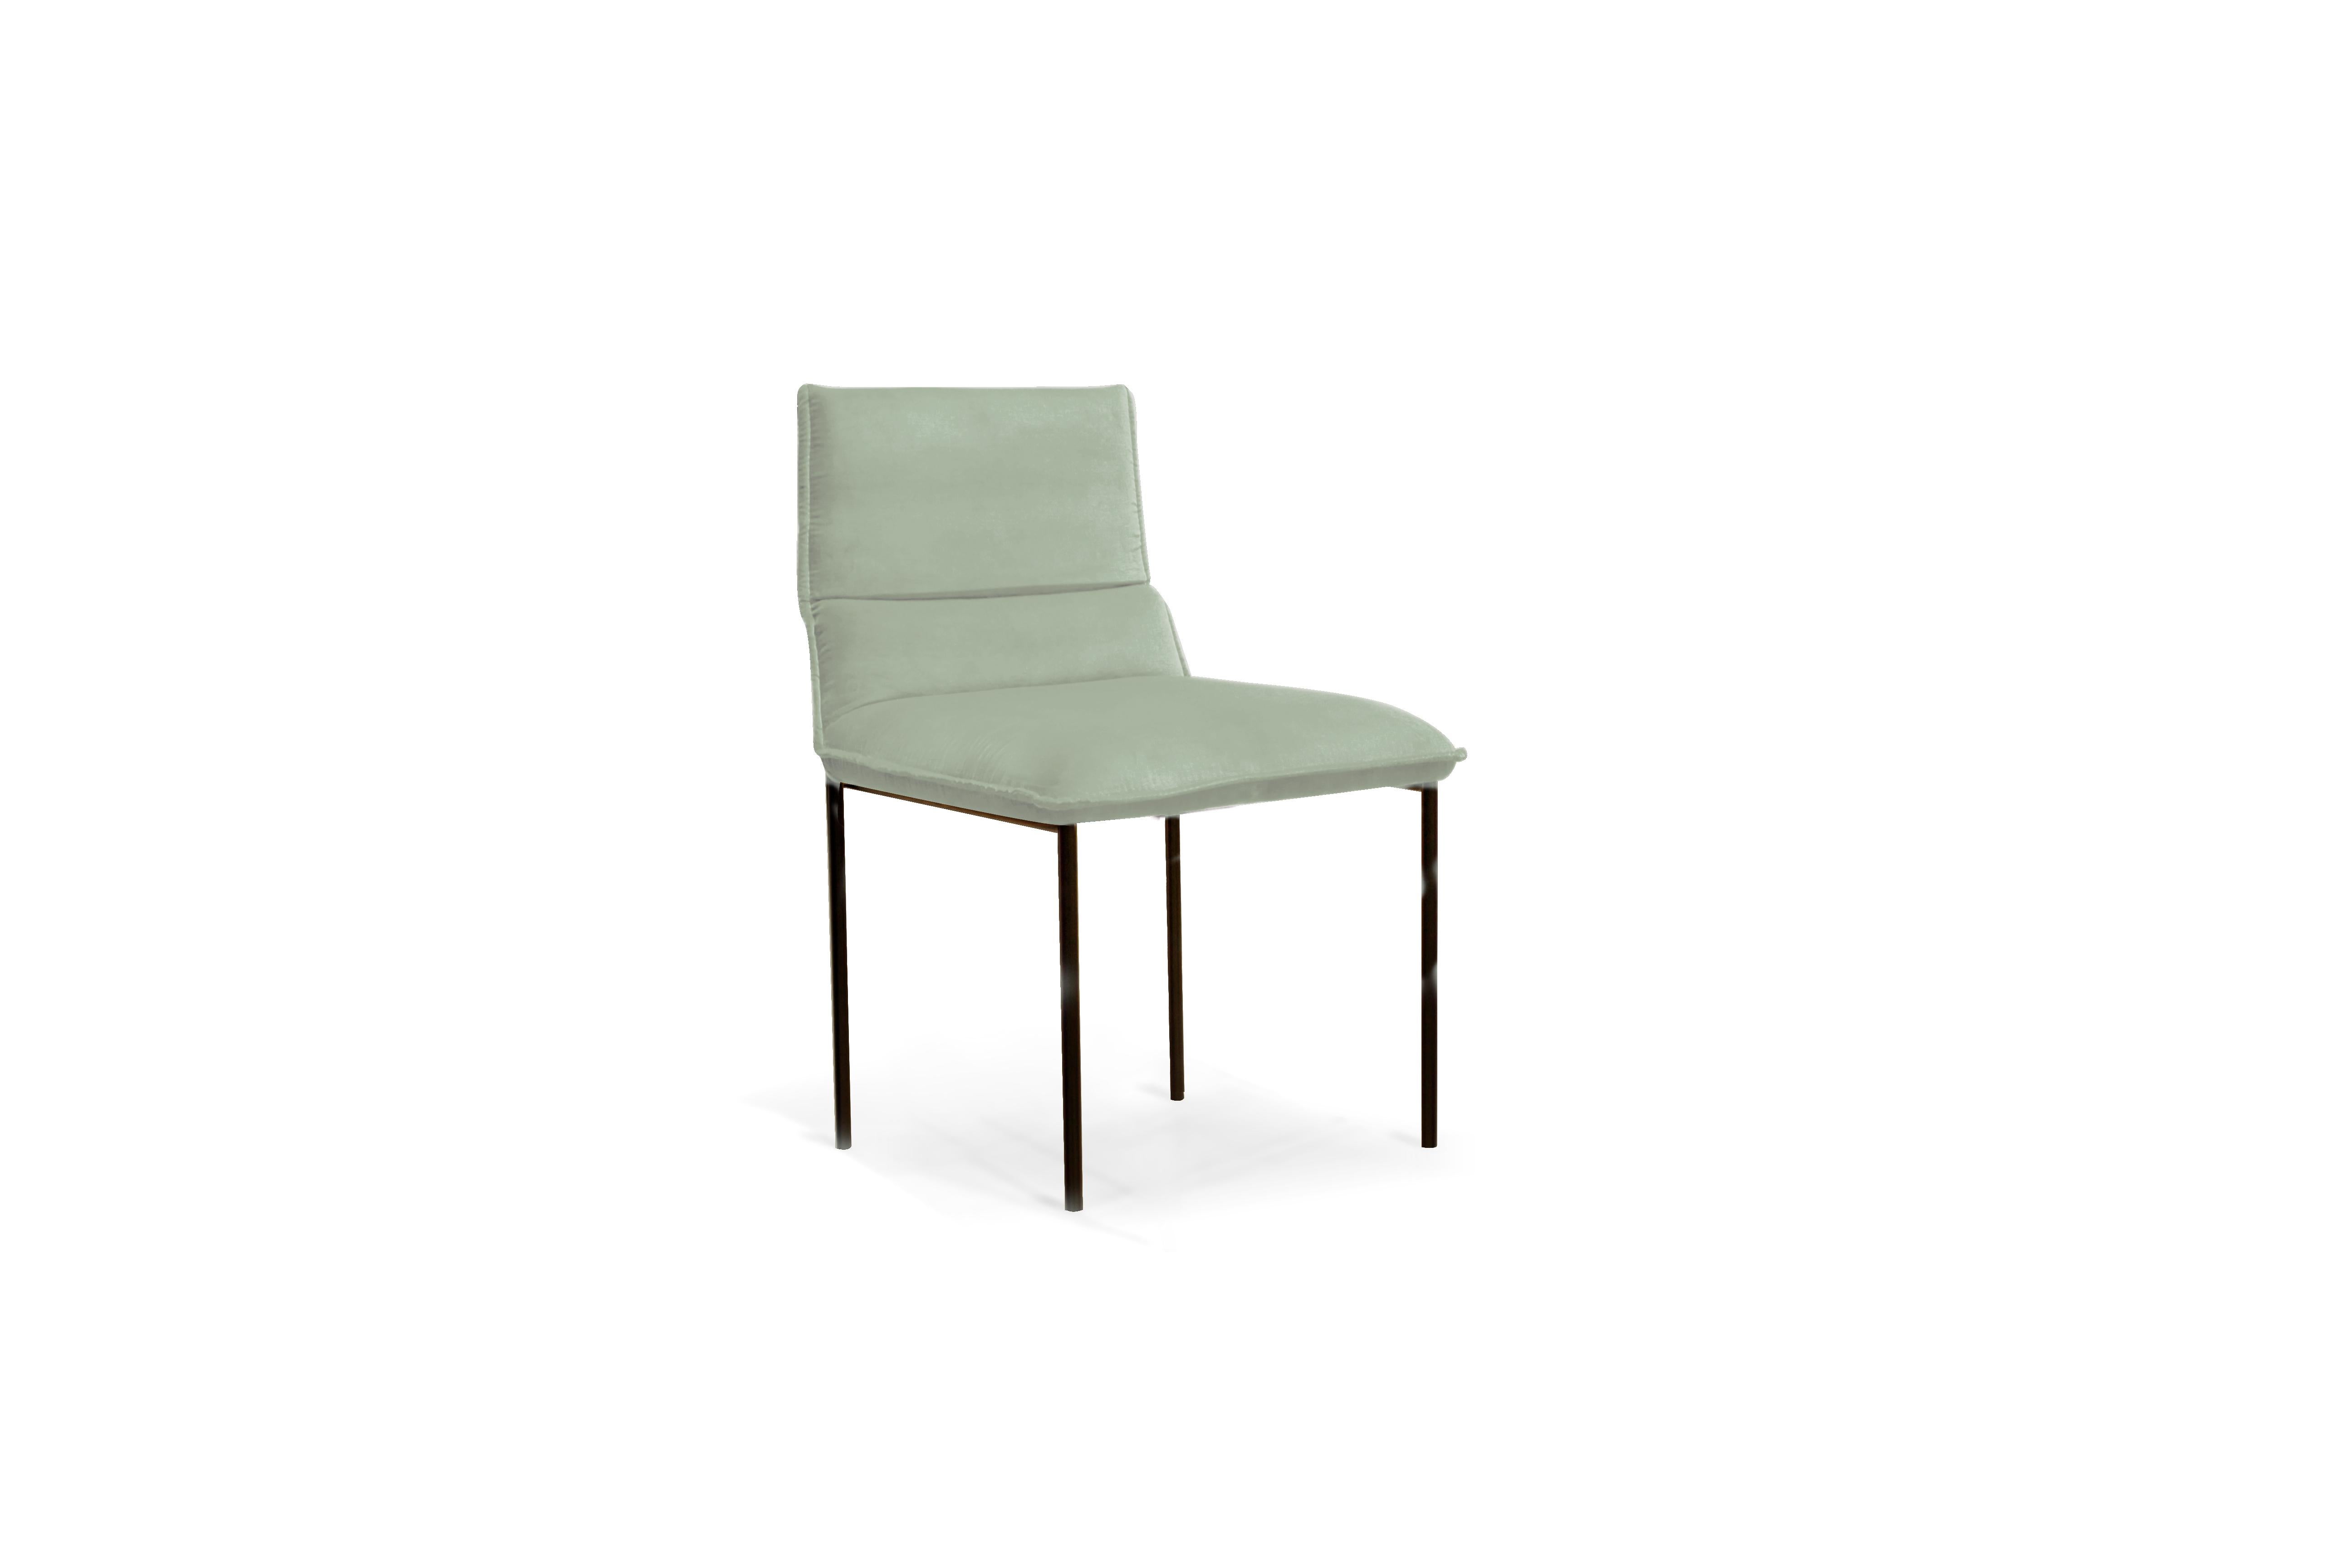 Einzigartiger Jeeves Stuhl von Collector
Abmessungen: B 45 x T 52 x H 80 cm
MATERIALIEN: Metall, Stoff.
Andere MATERIALs sind verfügbar. 

Die Marke Collector hat sich zum Ziel gesetzt, Teil des täglichen Lebens zu sein, indem sie die Möbel mit